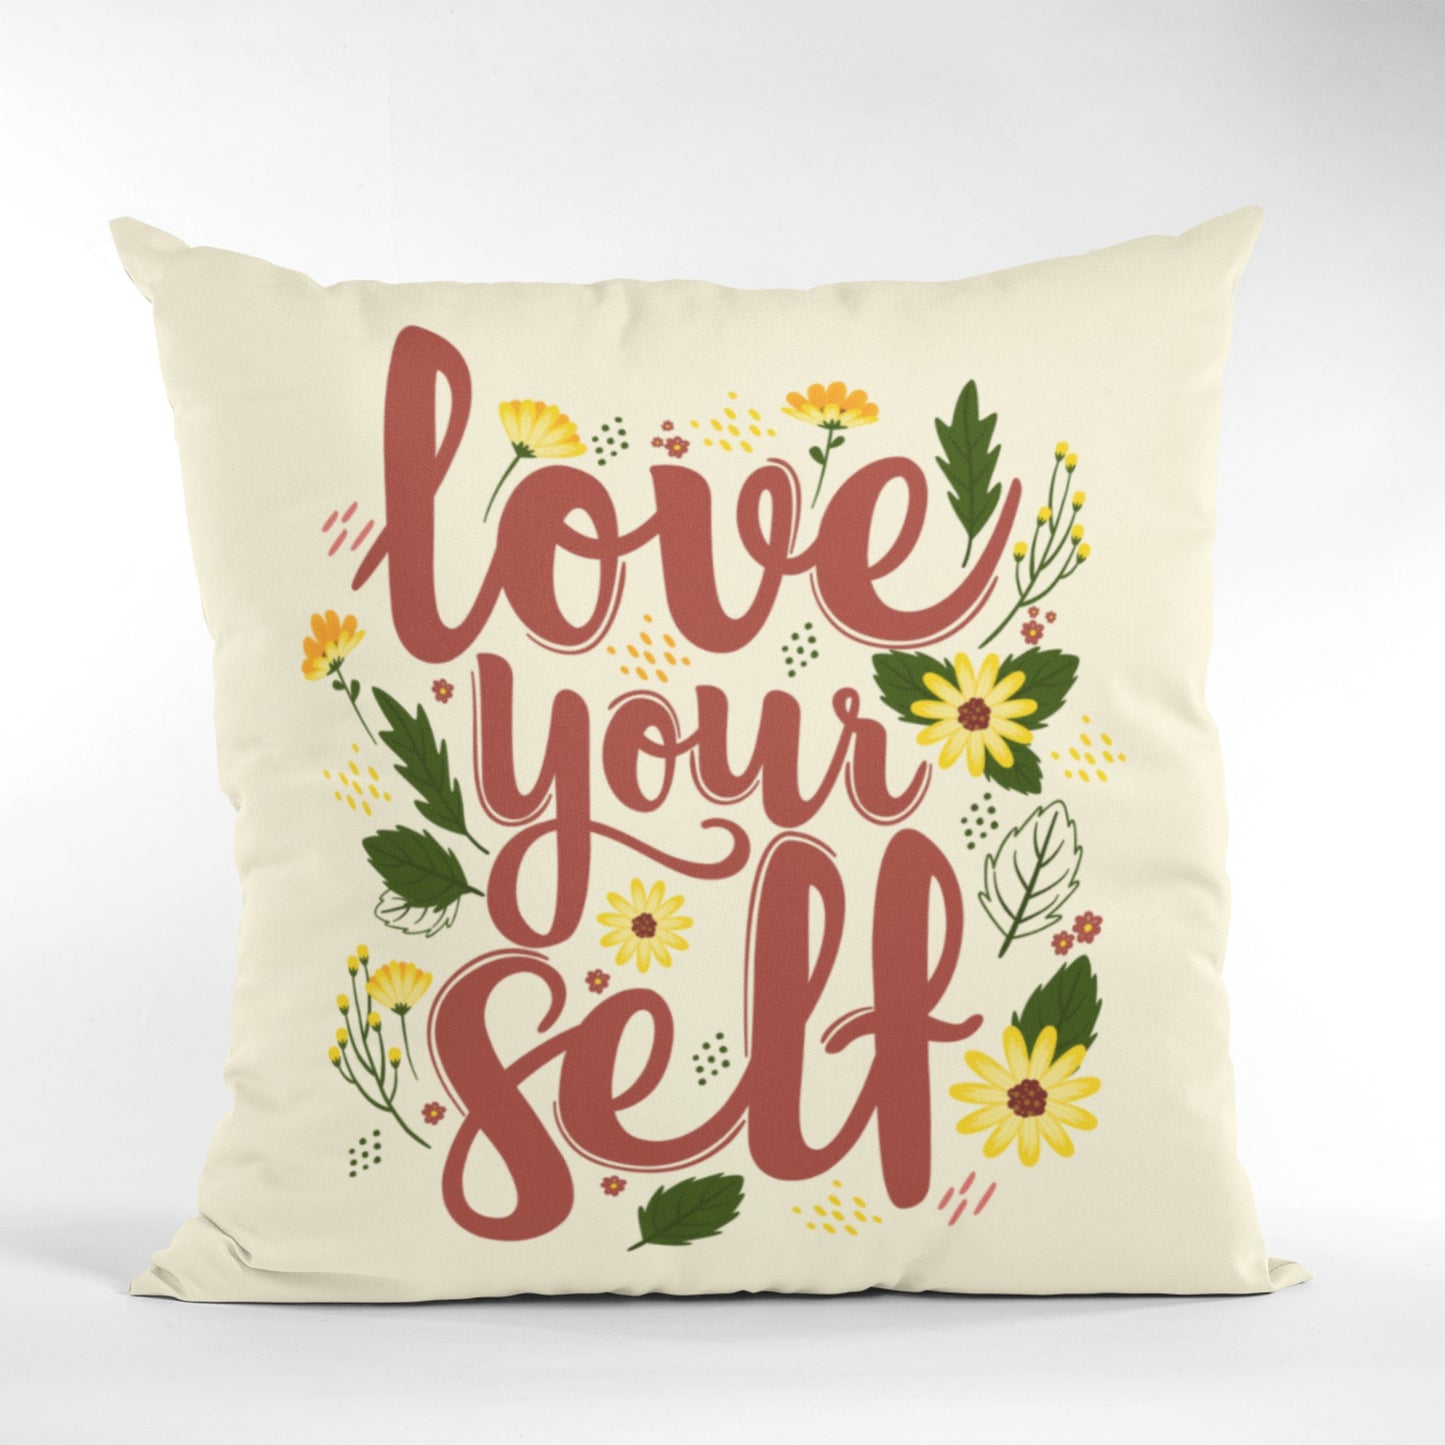 Self-love Quote Decorative Cushion